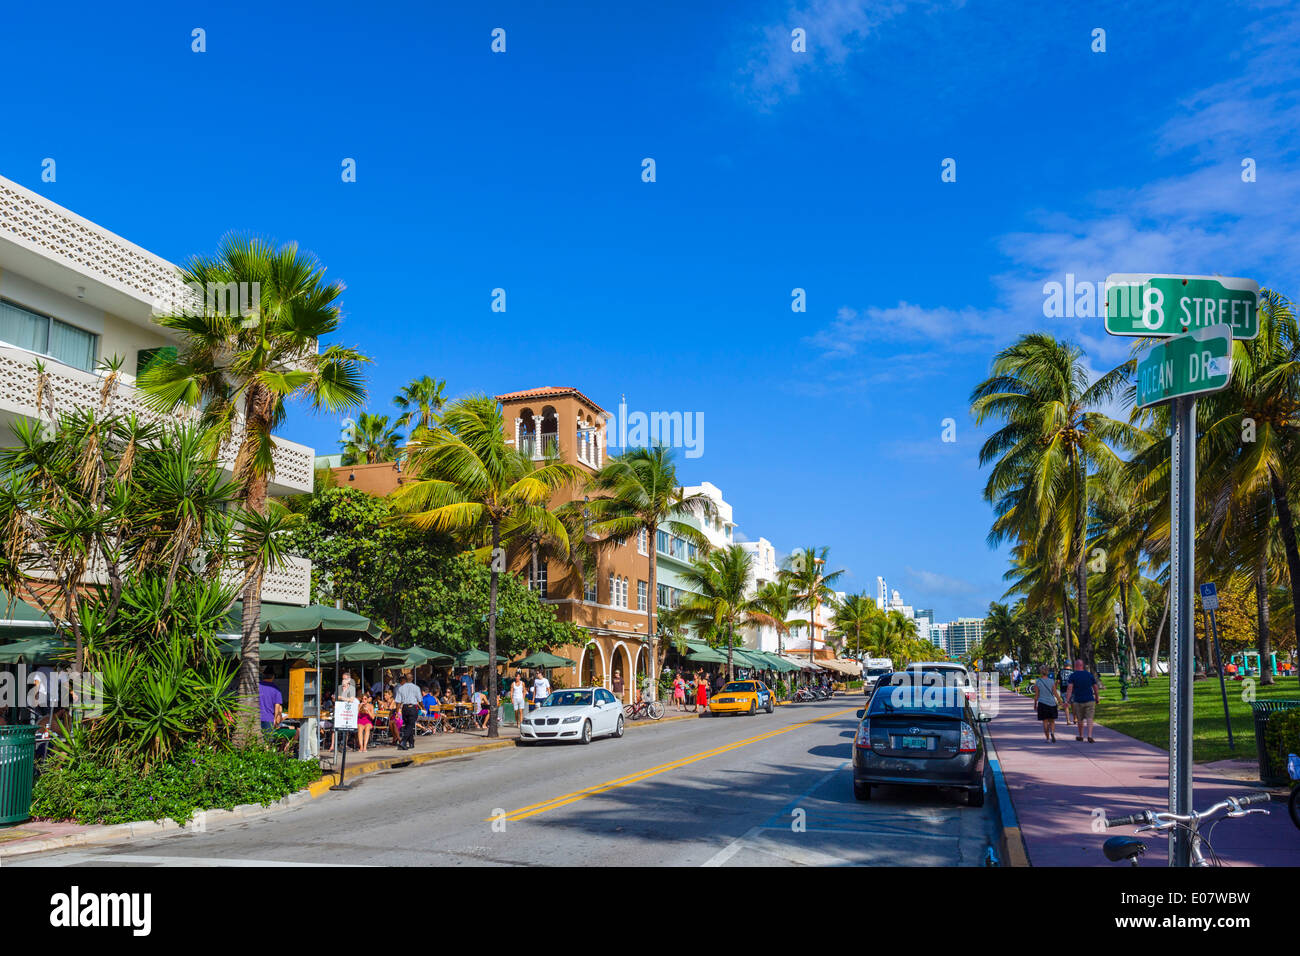 Ocean Drive at 8th Street, South Beach, Miami Beach, Florida, USA Stock Photo